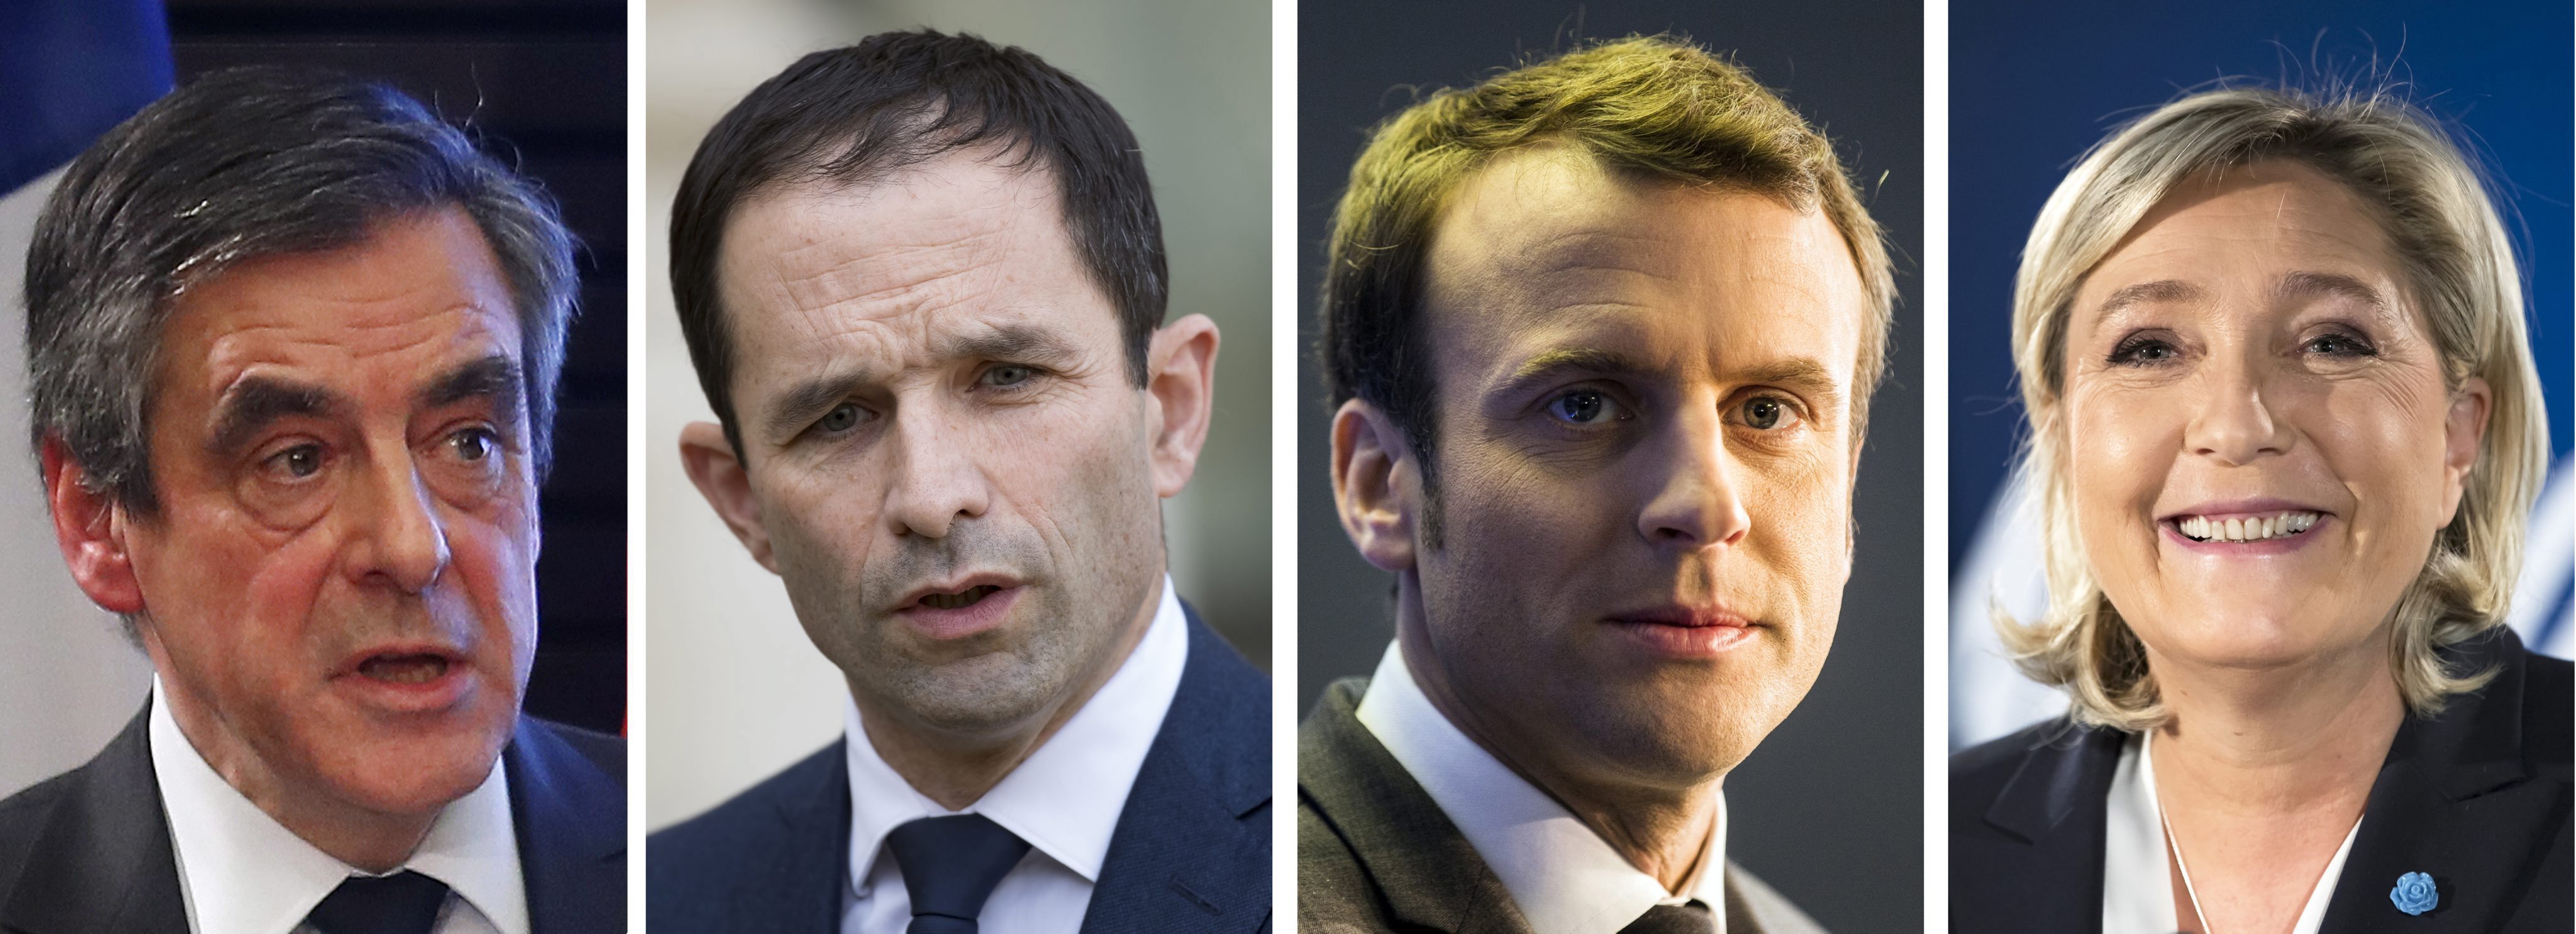 Fillon, Hamon, Macron y Le Pen, son los candidatos con más posibilidades de ganar la Presidencia de Francia.